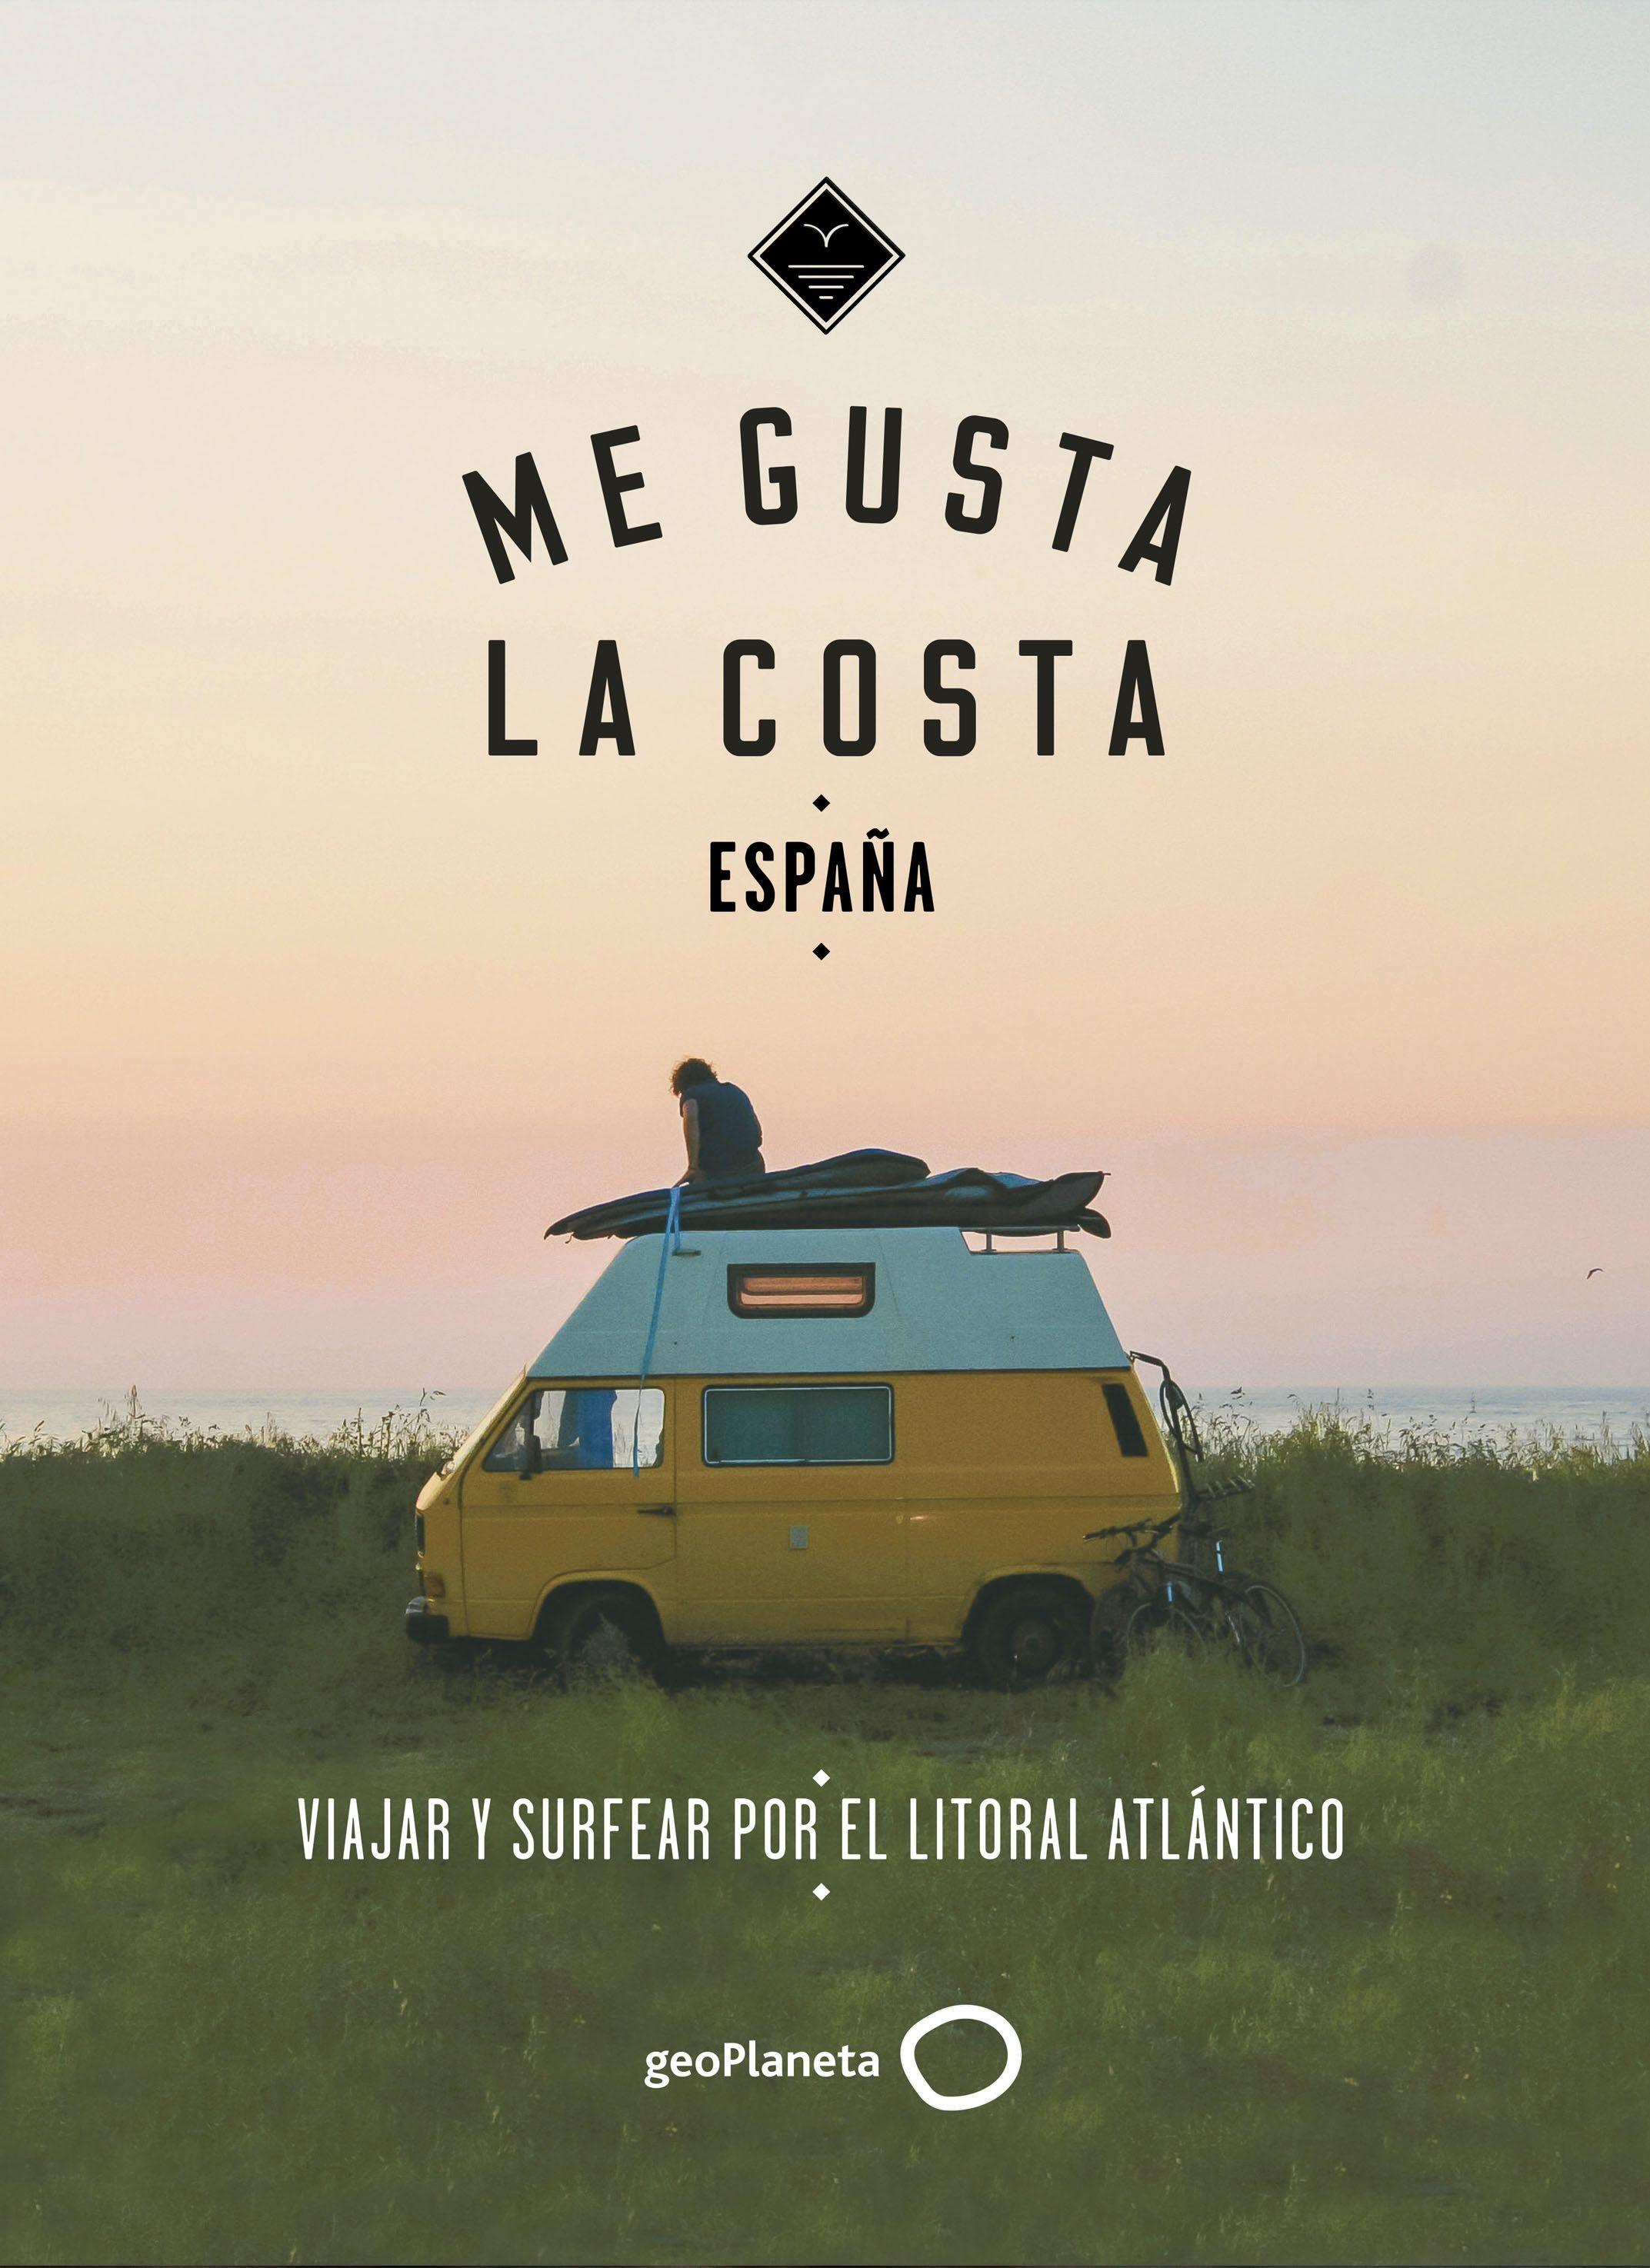 Me gusta la costa en España "Viajar y surfear por el litoral atlántico". 